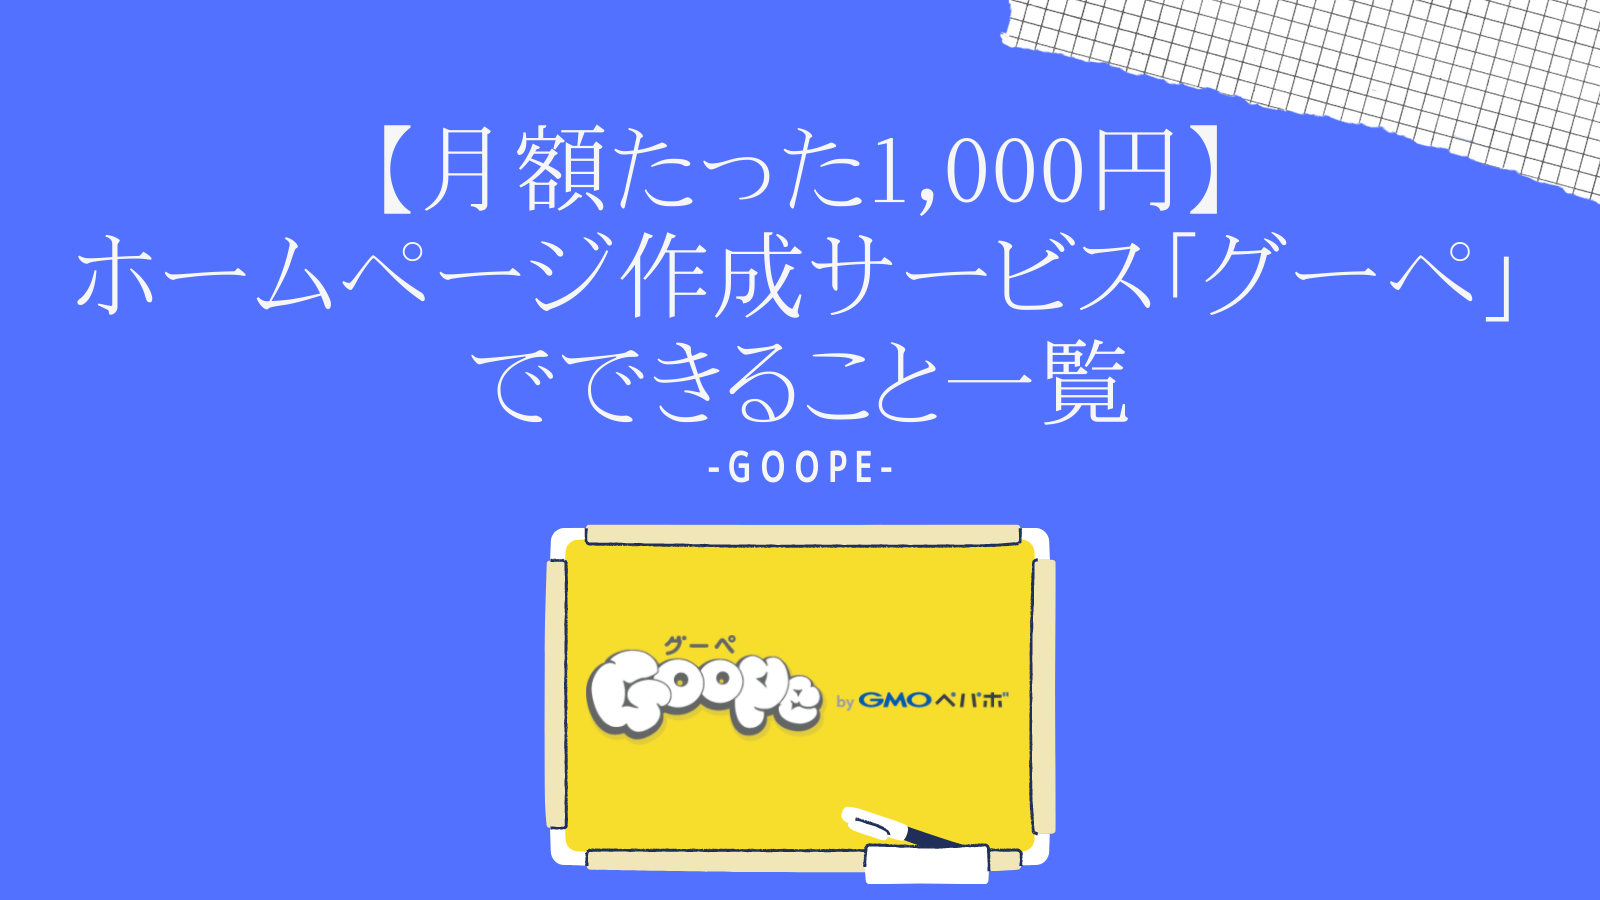 【月額たった1,000円】ホームページ作成サービス「グーペ」でできること一覧